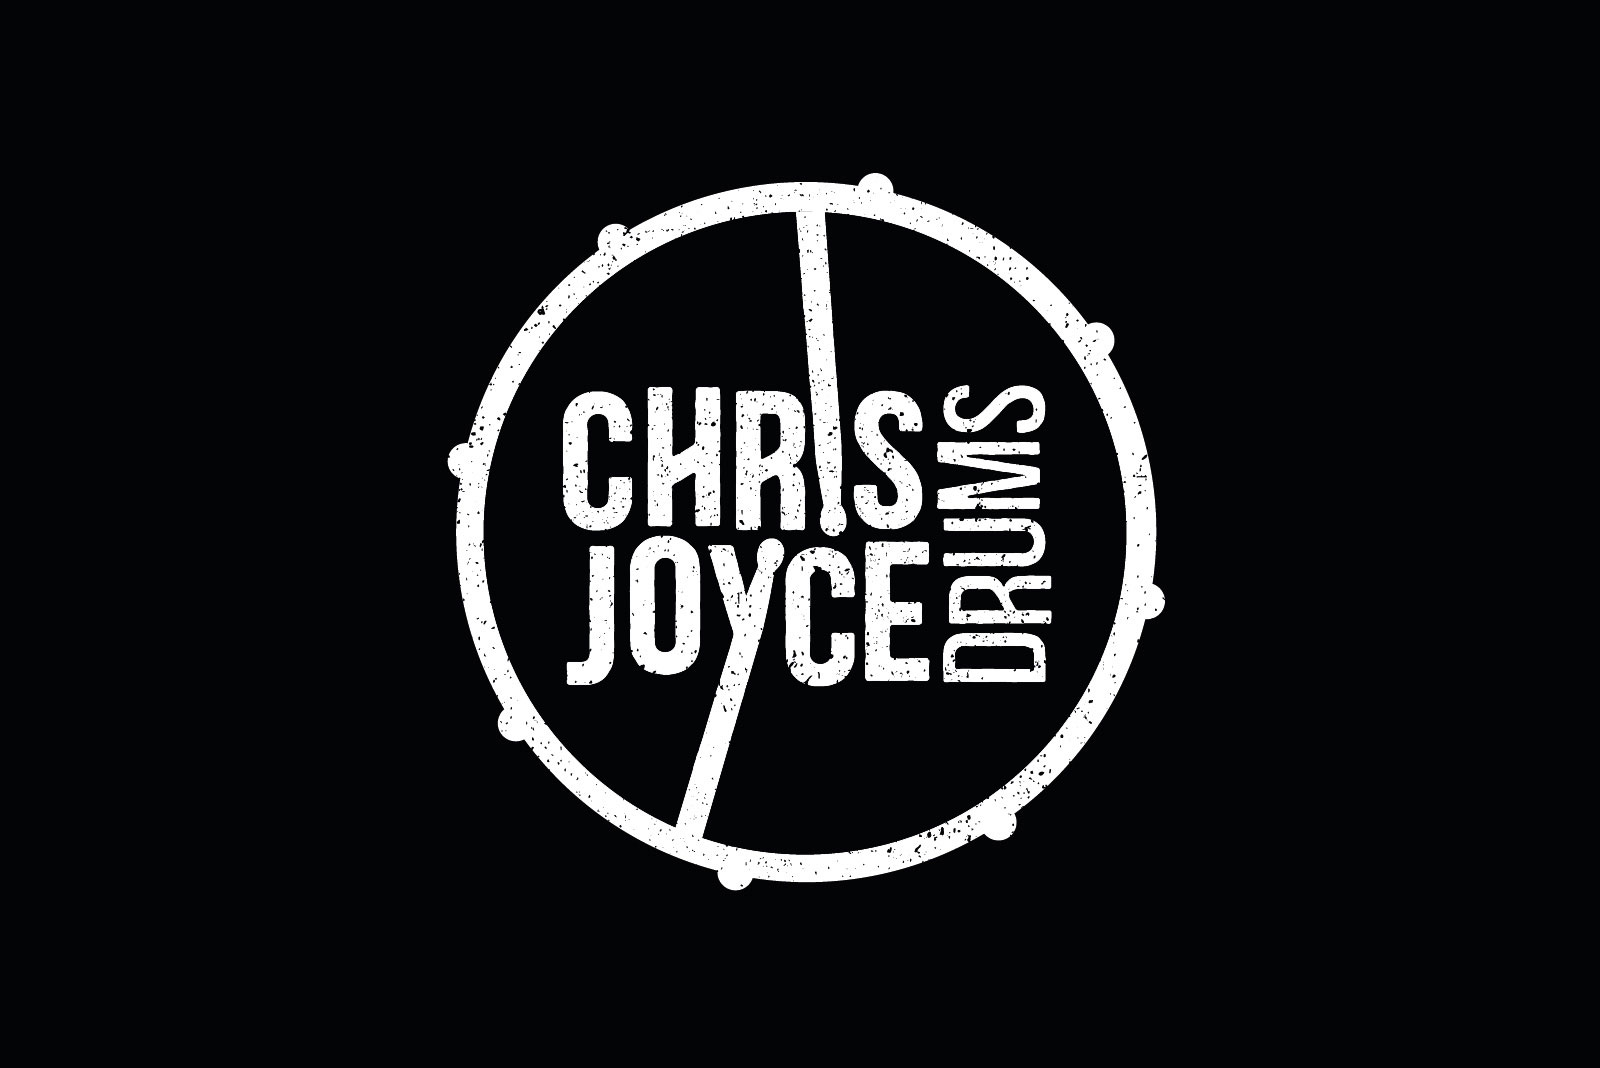 Chris Joyce vintage logo